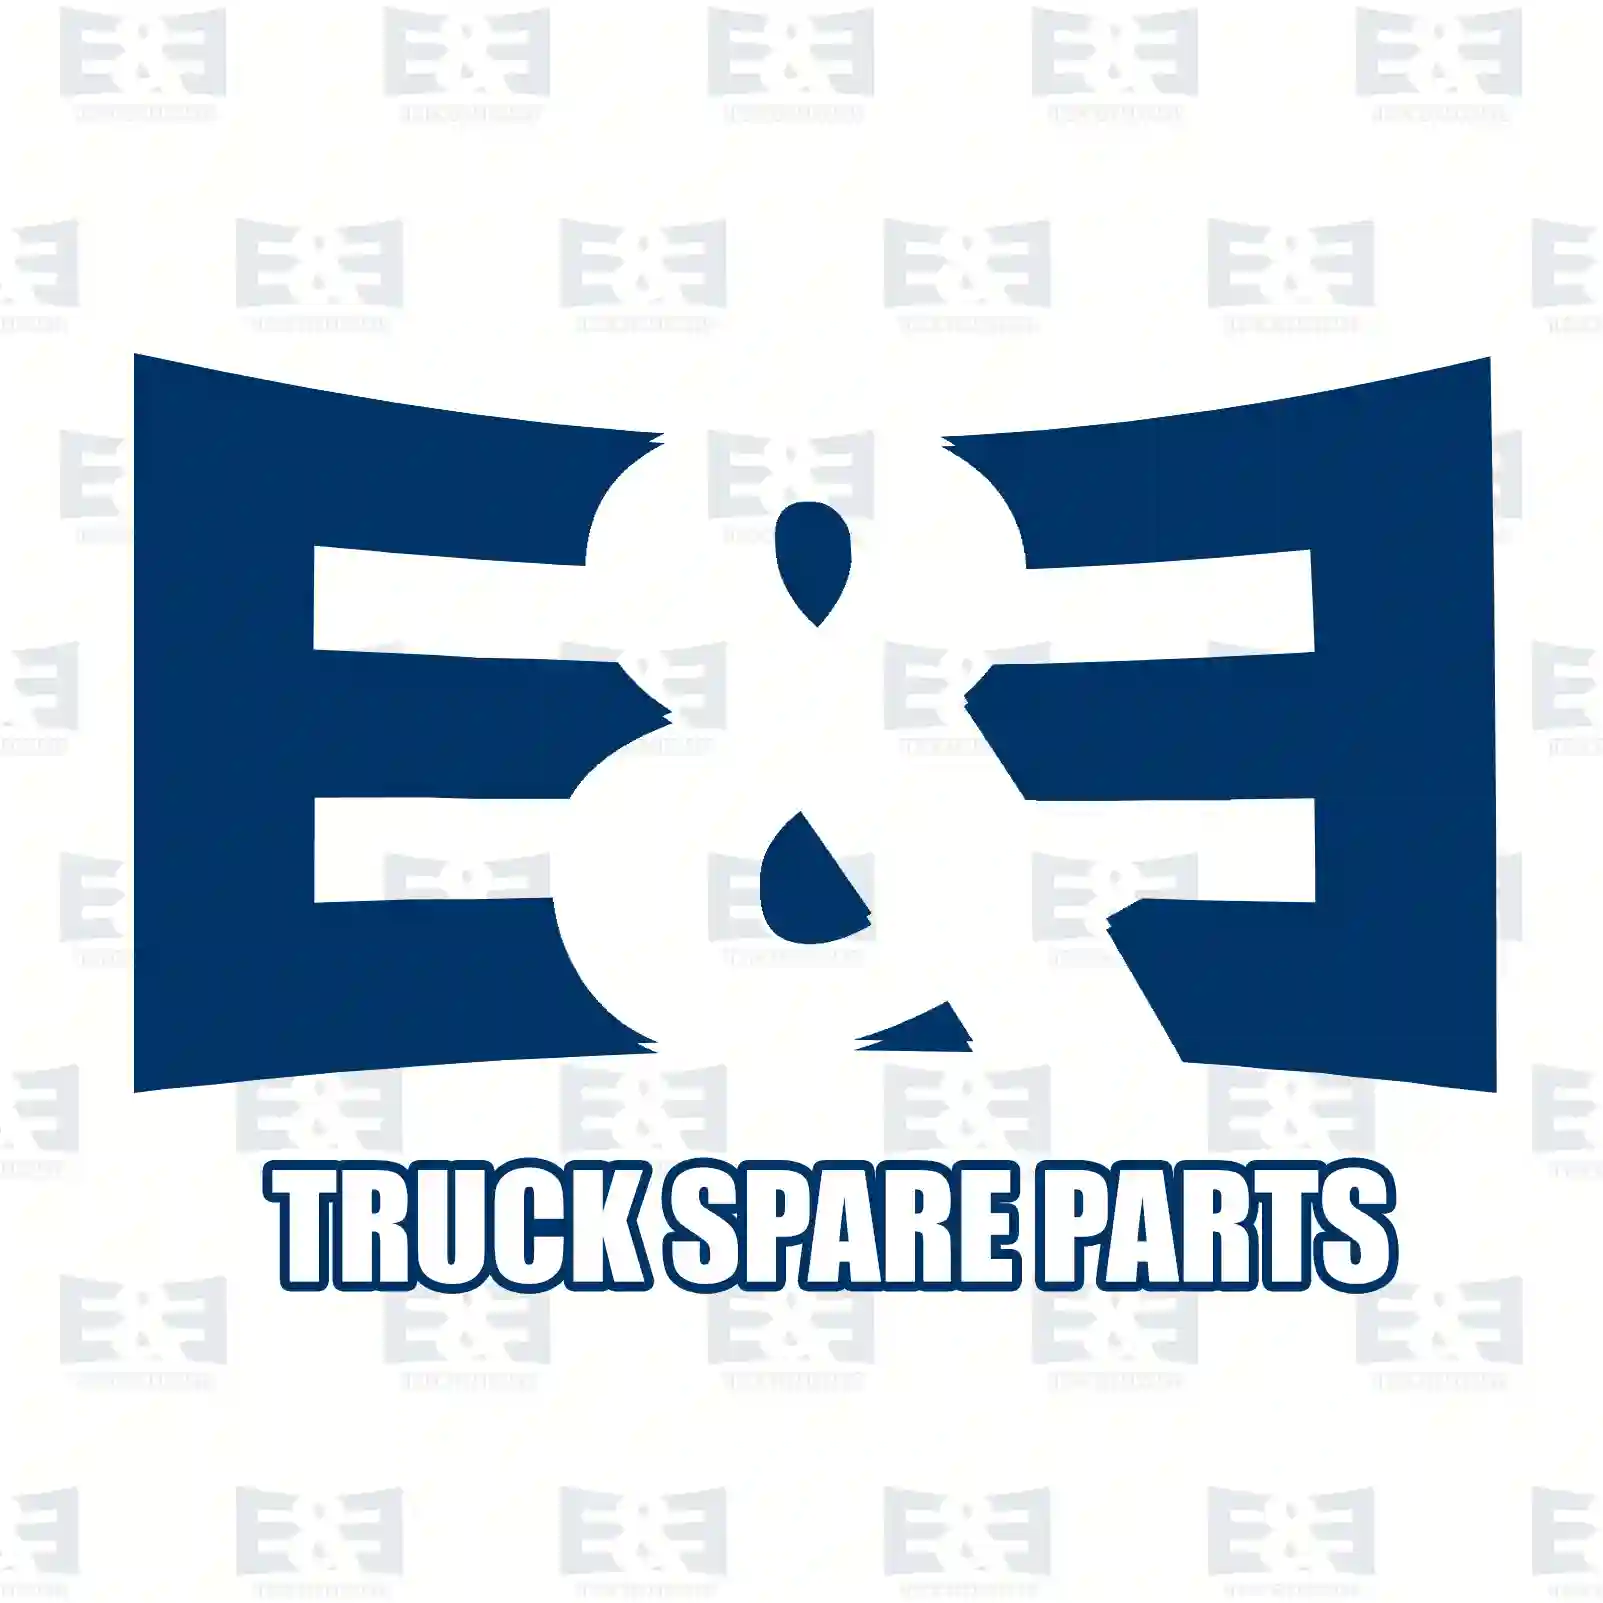 Gear shift knob, 2E2277158, 1441235, ZG30530-0008 ||  2E2277158 E&E Truck Spare Parts | Truck Spare Parts, Auotomotive Spare Parts Gear shift knob, 2E2277158, 1441235, ZG30530-0008 ||  2E2277158 E&E Truck Spare Parts | Truck Spare Parts, Auotomotive Spare Parts